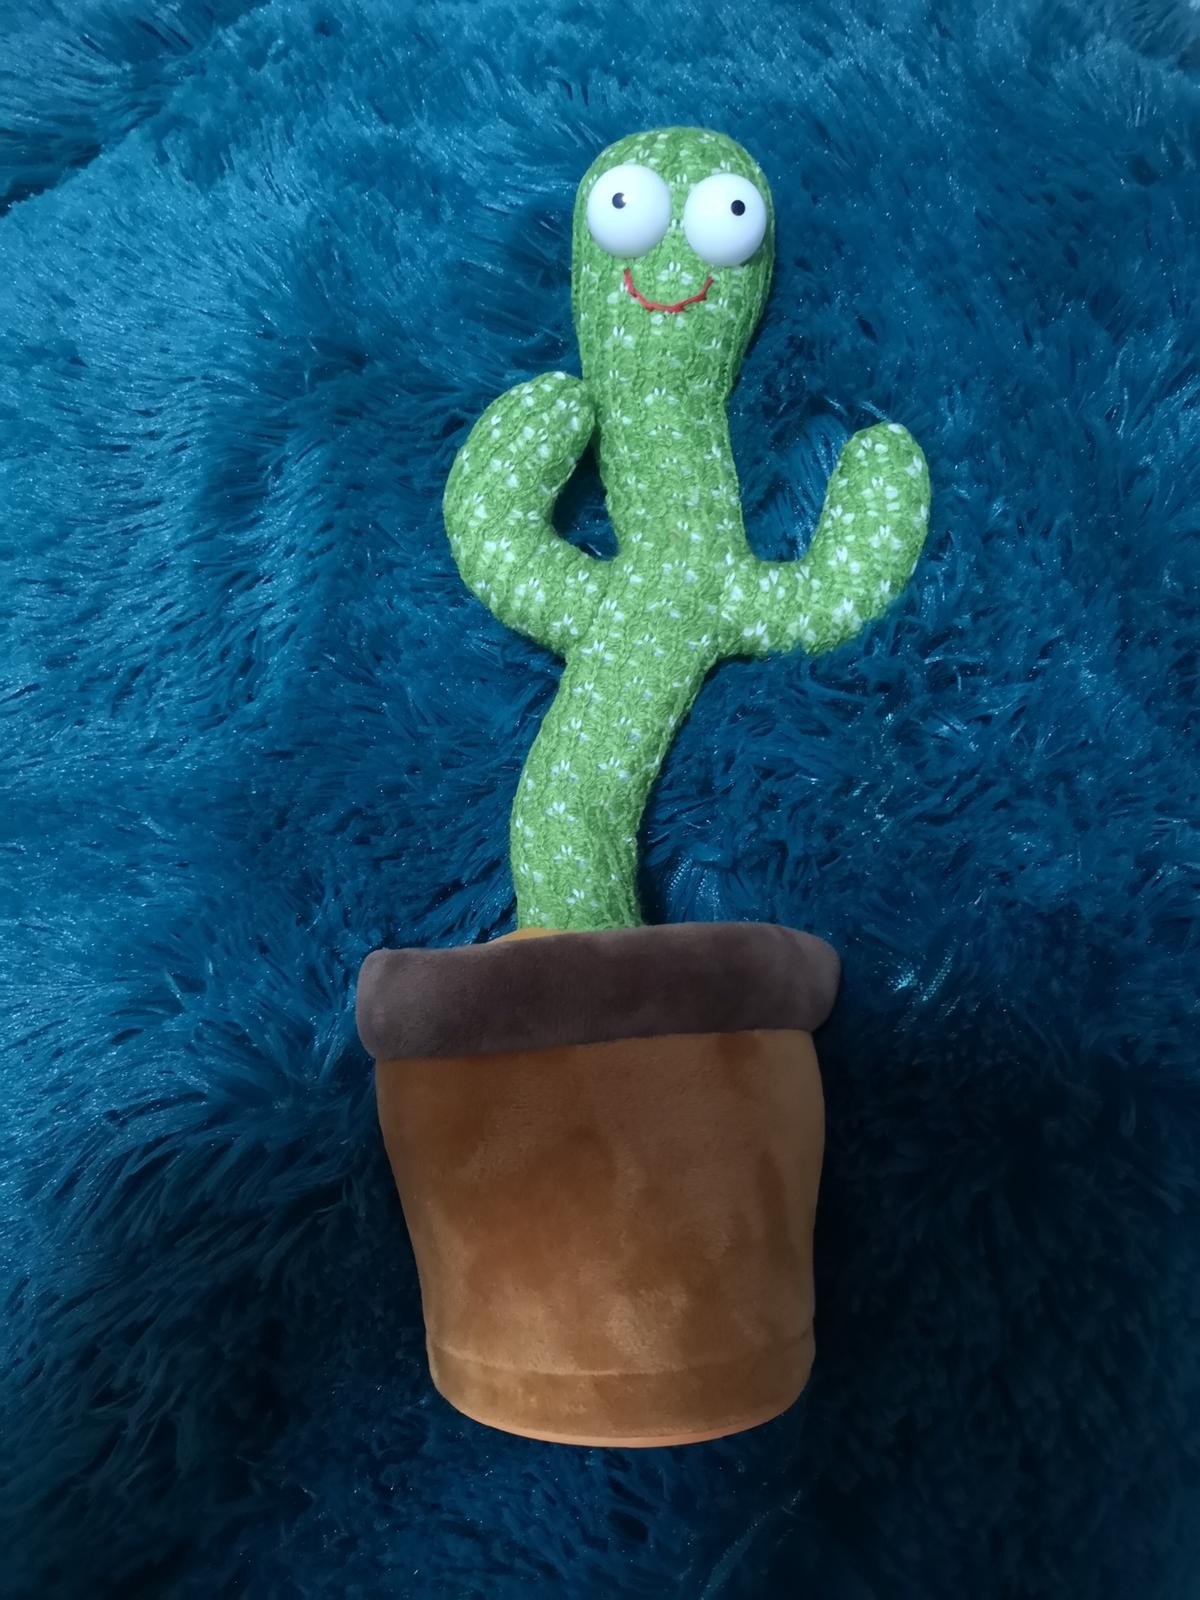 Talking Cactus Toy Imitating Cactus Toy Plüschkaktus Singing Dancing Cactus Toy